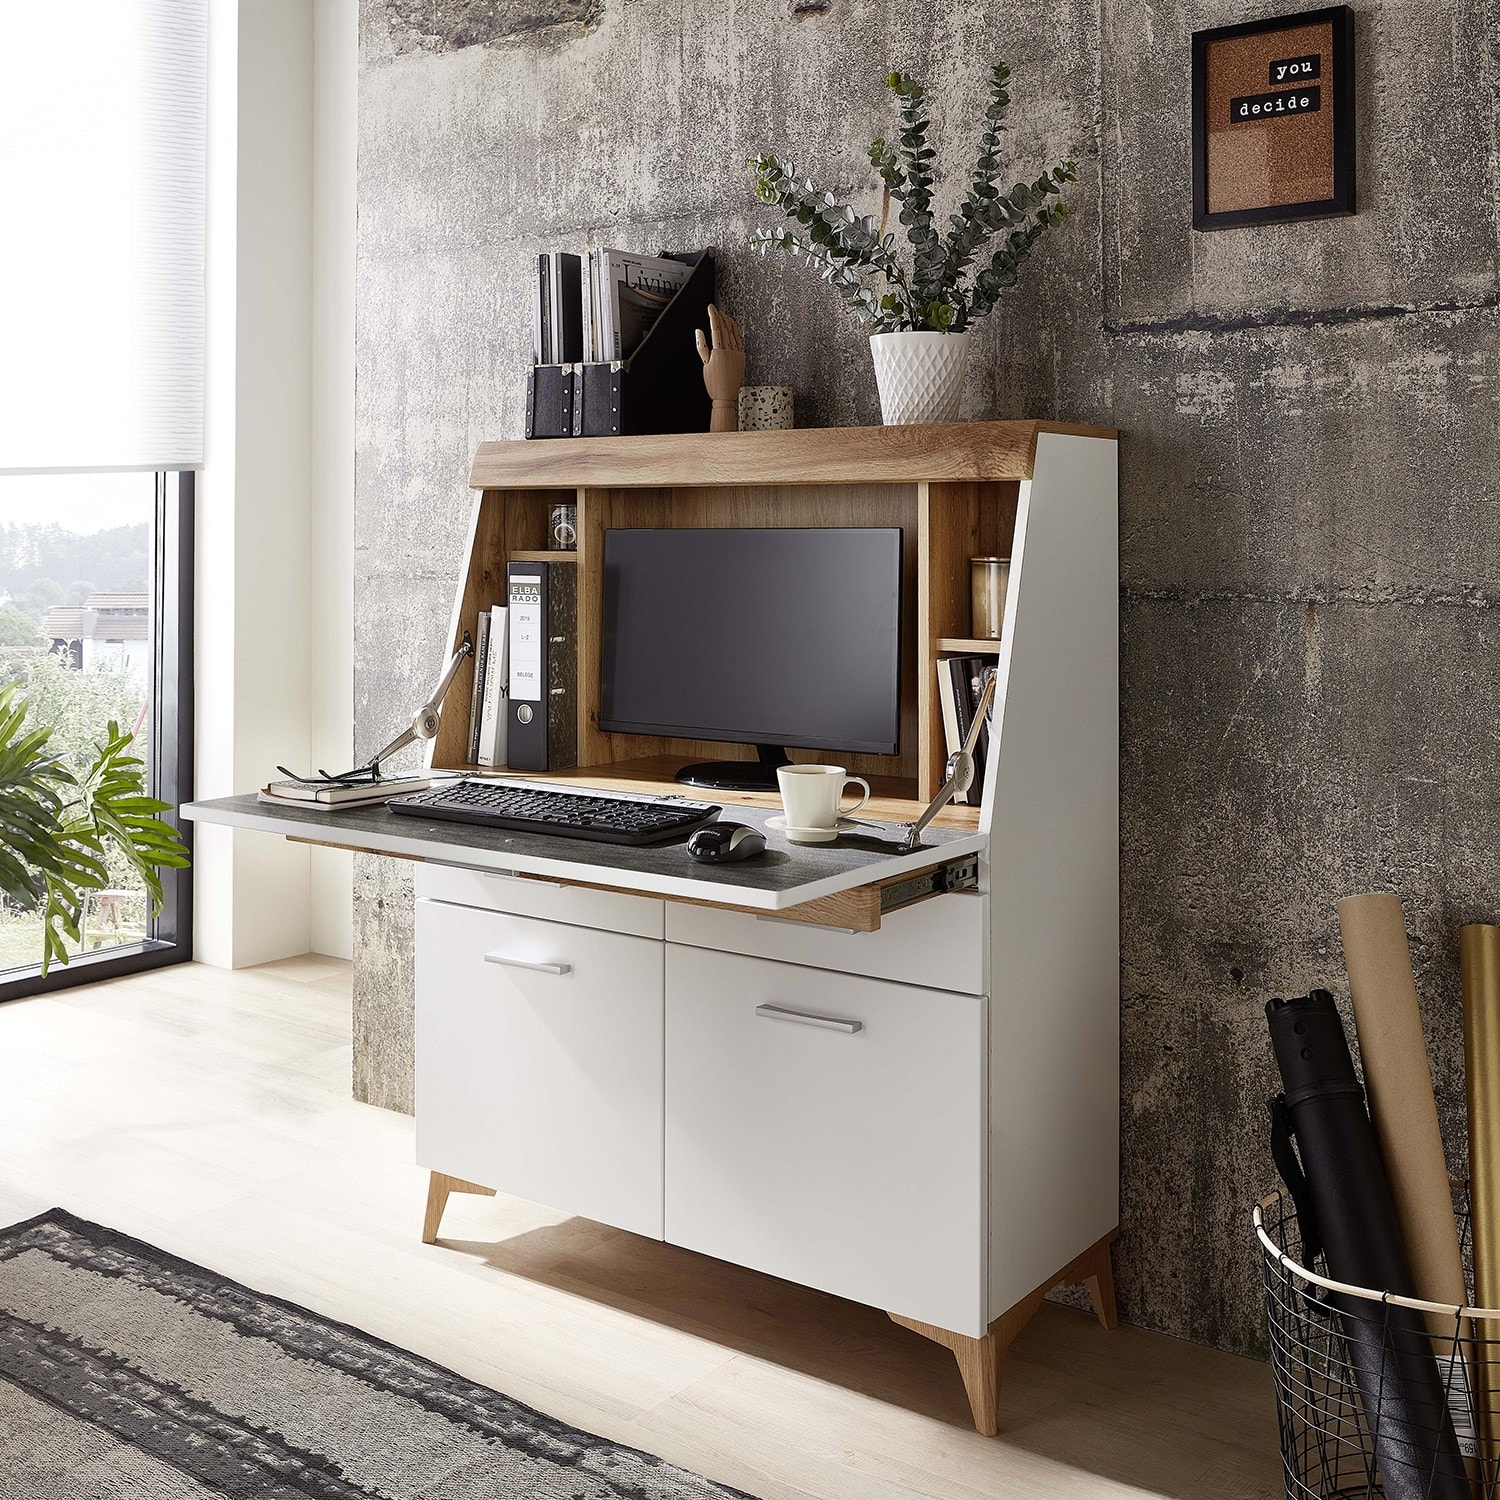 Pegane - Table de bureau en MDF coloris Blanc, chêne - Longueur 98